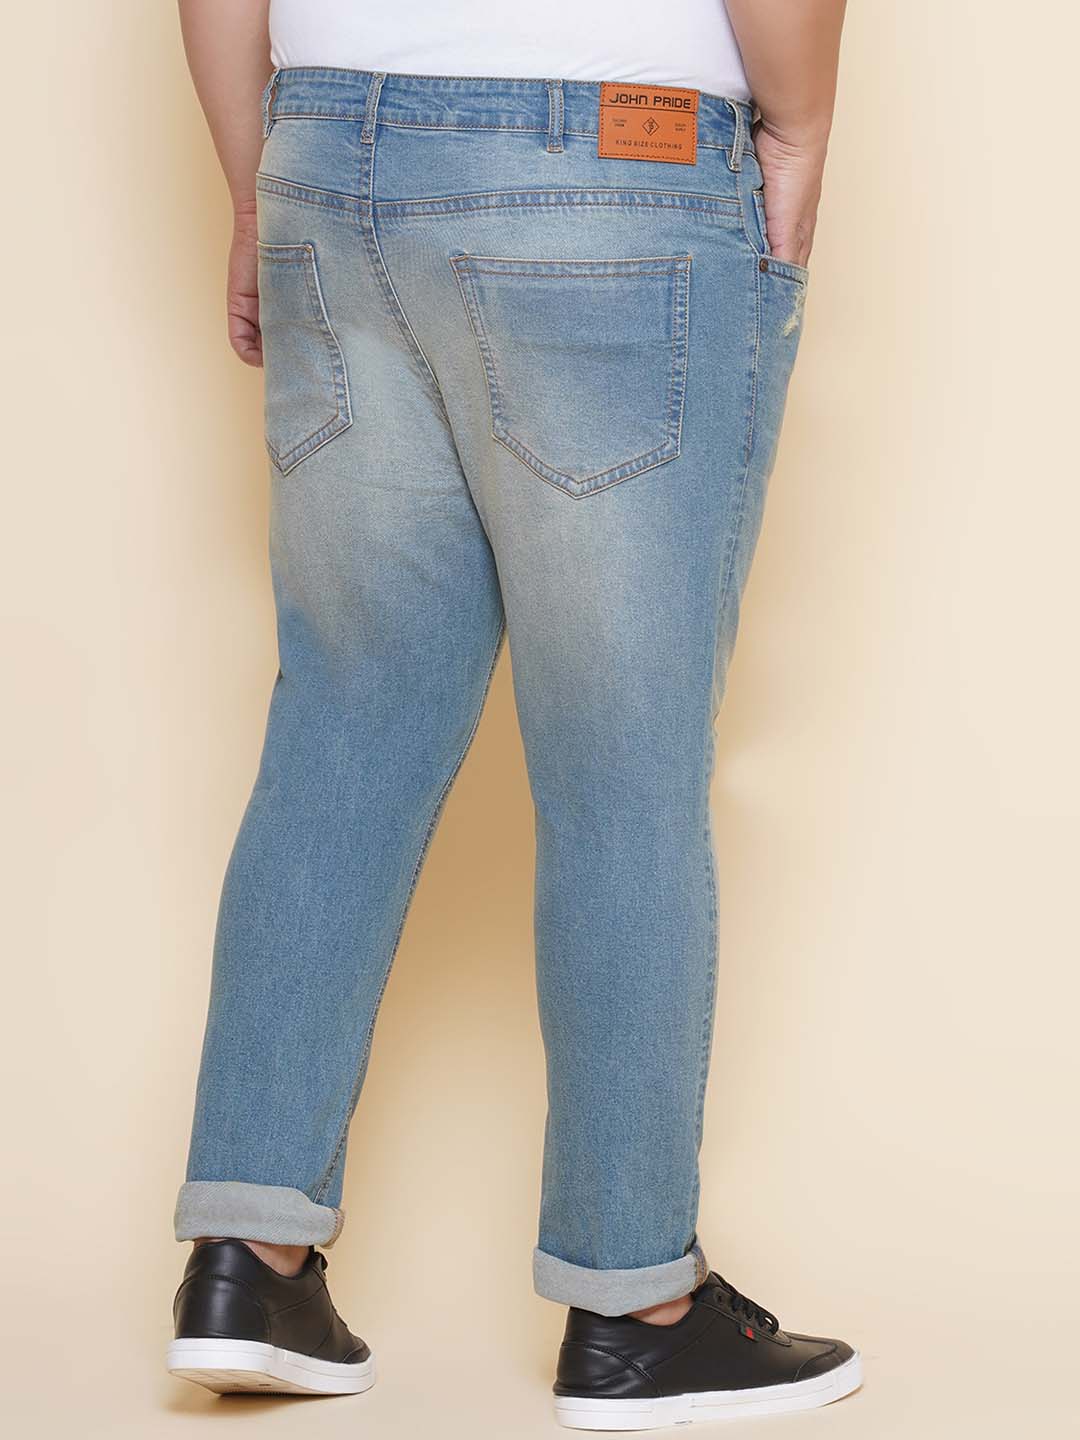 bottomwear/jeans/EJPJ25141/ejpj25141-5.jpg